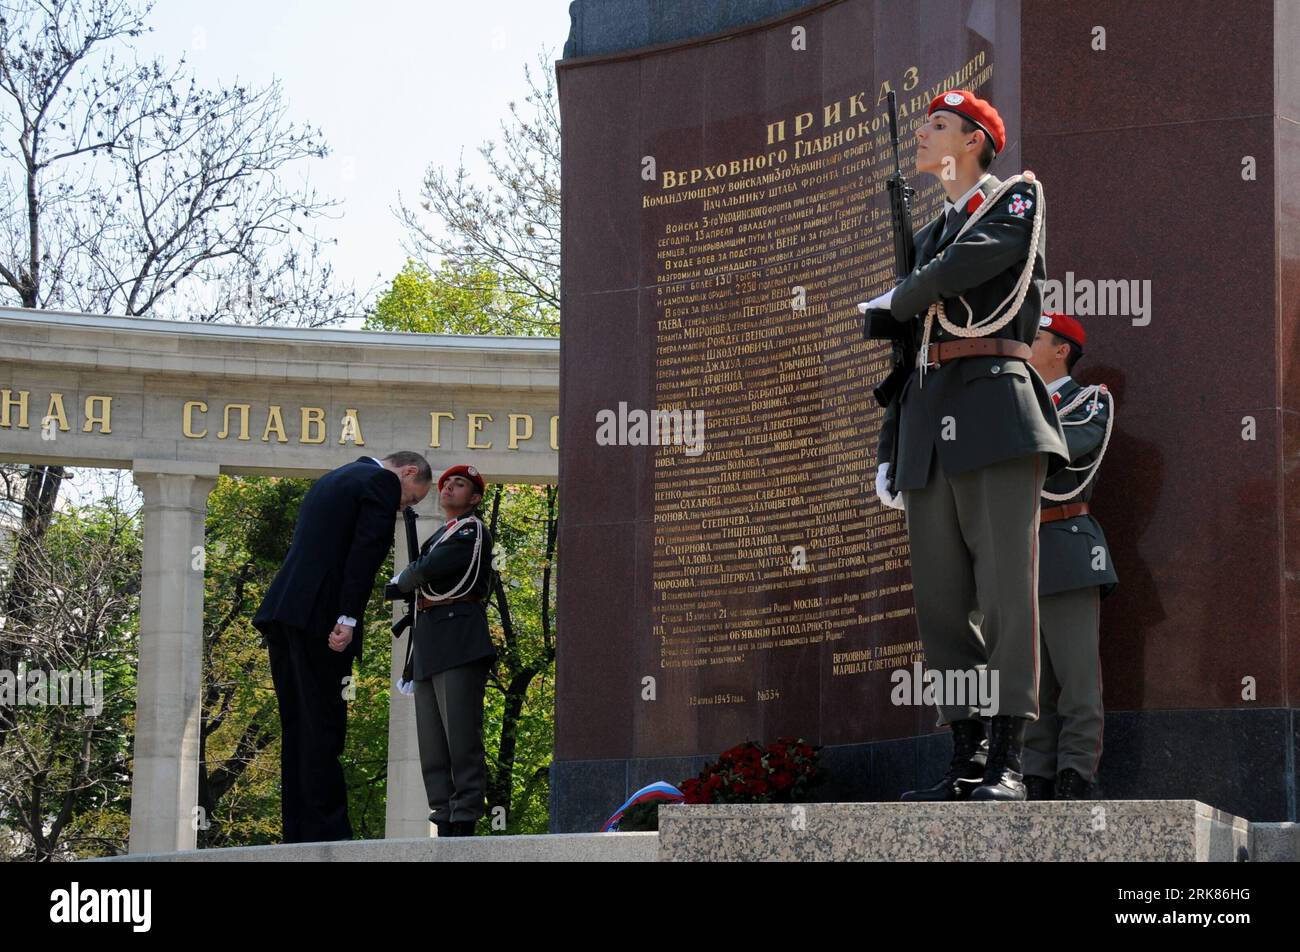 Bildnummer : 53975355 Datum : 25.04.2010 Copyright : imago/Xinhua (100425) -- VIENNE, 25 avril 2010 (Xinhua) -- visite du Premier ministre russe Vladimir Poutine (L) à une cérémonie de dépôt de gerbe au mémorial de l'Armée rouge dans la capitale autrichienne Vienne le 25 avril 2010. (Xinhua/Liu Gang) (nxl) (1)AUTRICHE-VIENNE-RUSSIE-POUTINE-ARMÉE ROUGE-MÉMORIAL PUBLICATIONxNOTxINxCHN personnes Politik kbdig xmk 2010 quer Bildnummer 53975355 Date 25 04 2010 Copyright Imago XINHUA Vienne avril 25 2010 XINHUA visite les premiers ministres pondeuses russes Vladimir Poutine l'assiste à une cérémonie AU Mémorial de l'Armée rouge en AUTRICHE Banque D'Images